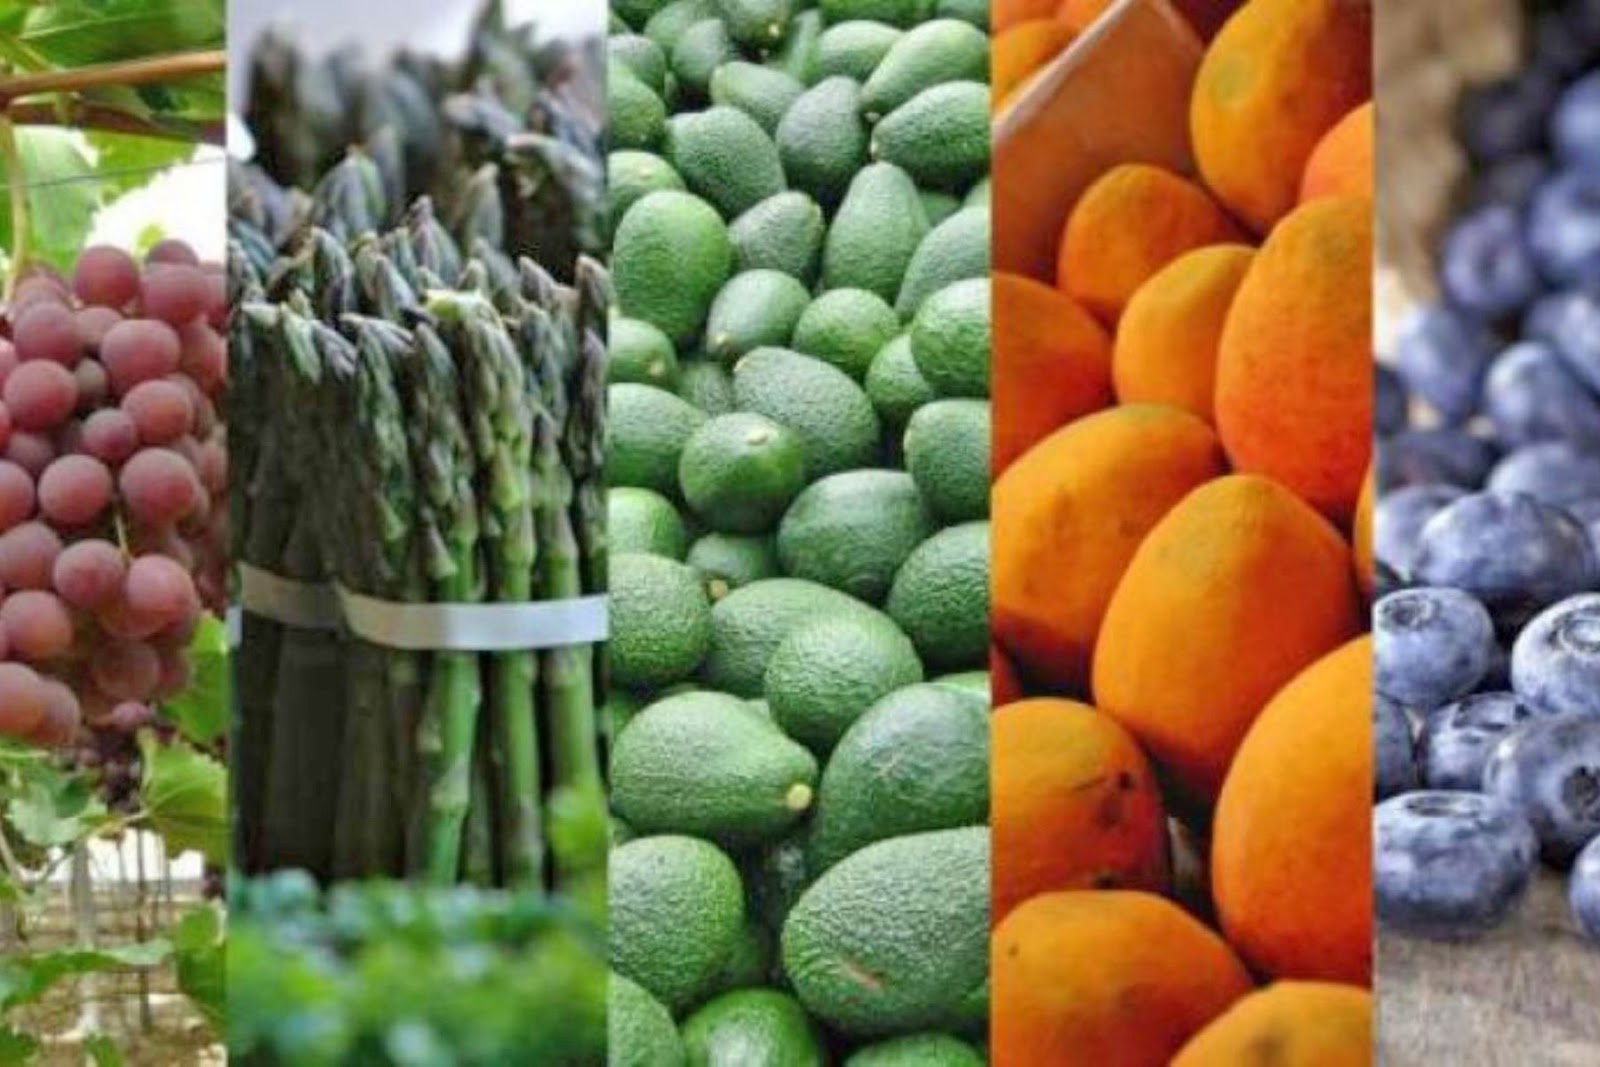 En los últimos años, las agroexportaciones se han convertido en puntal del comercio exterior peruano, debido fundamentalmente a la calidad de sus productos. ANDINA/Difusión